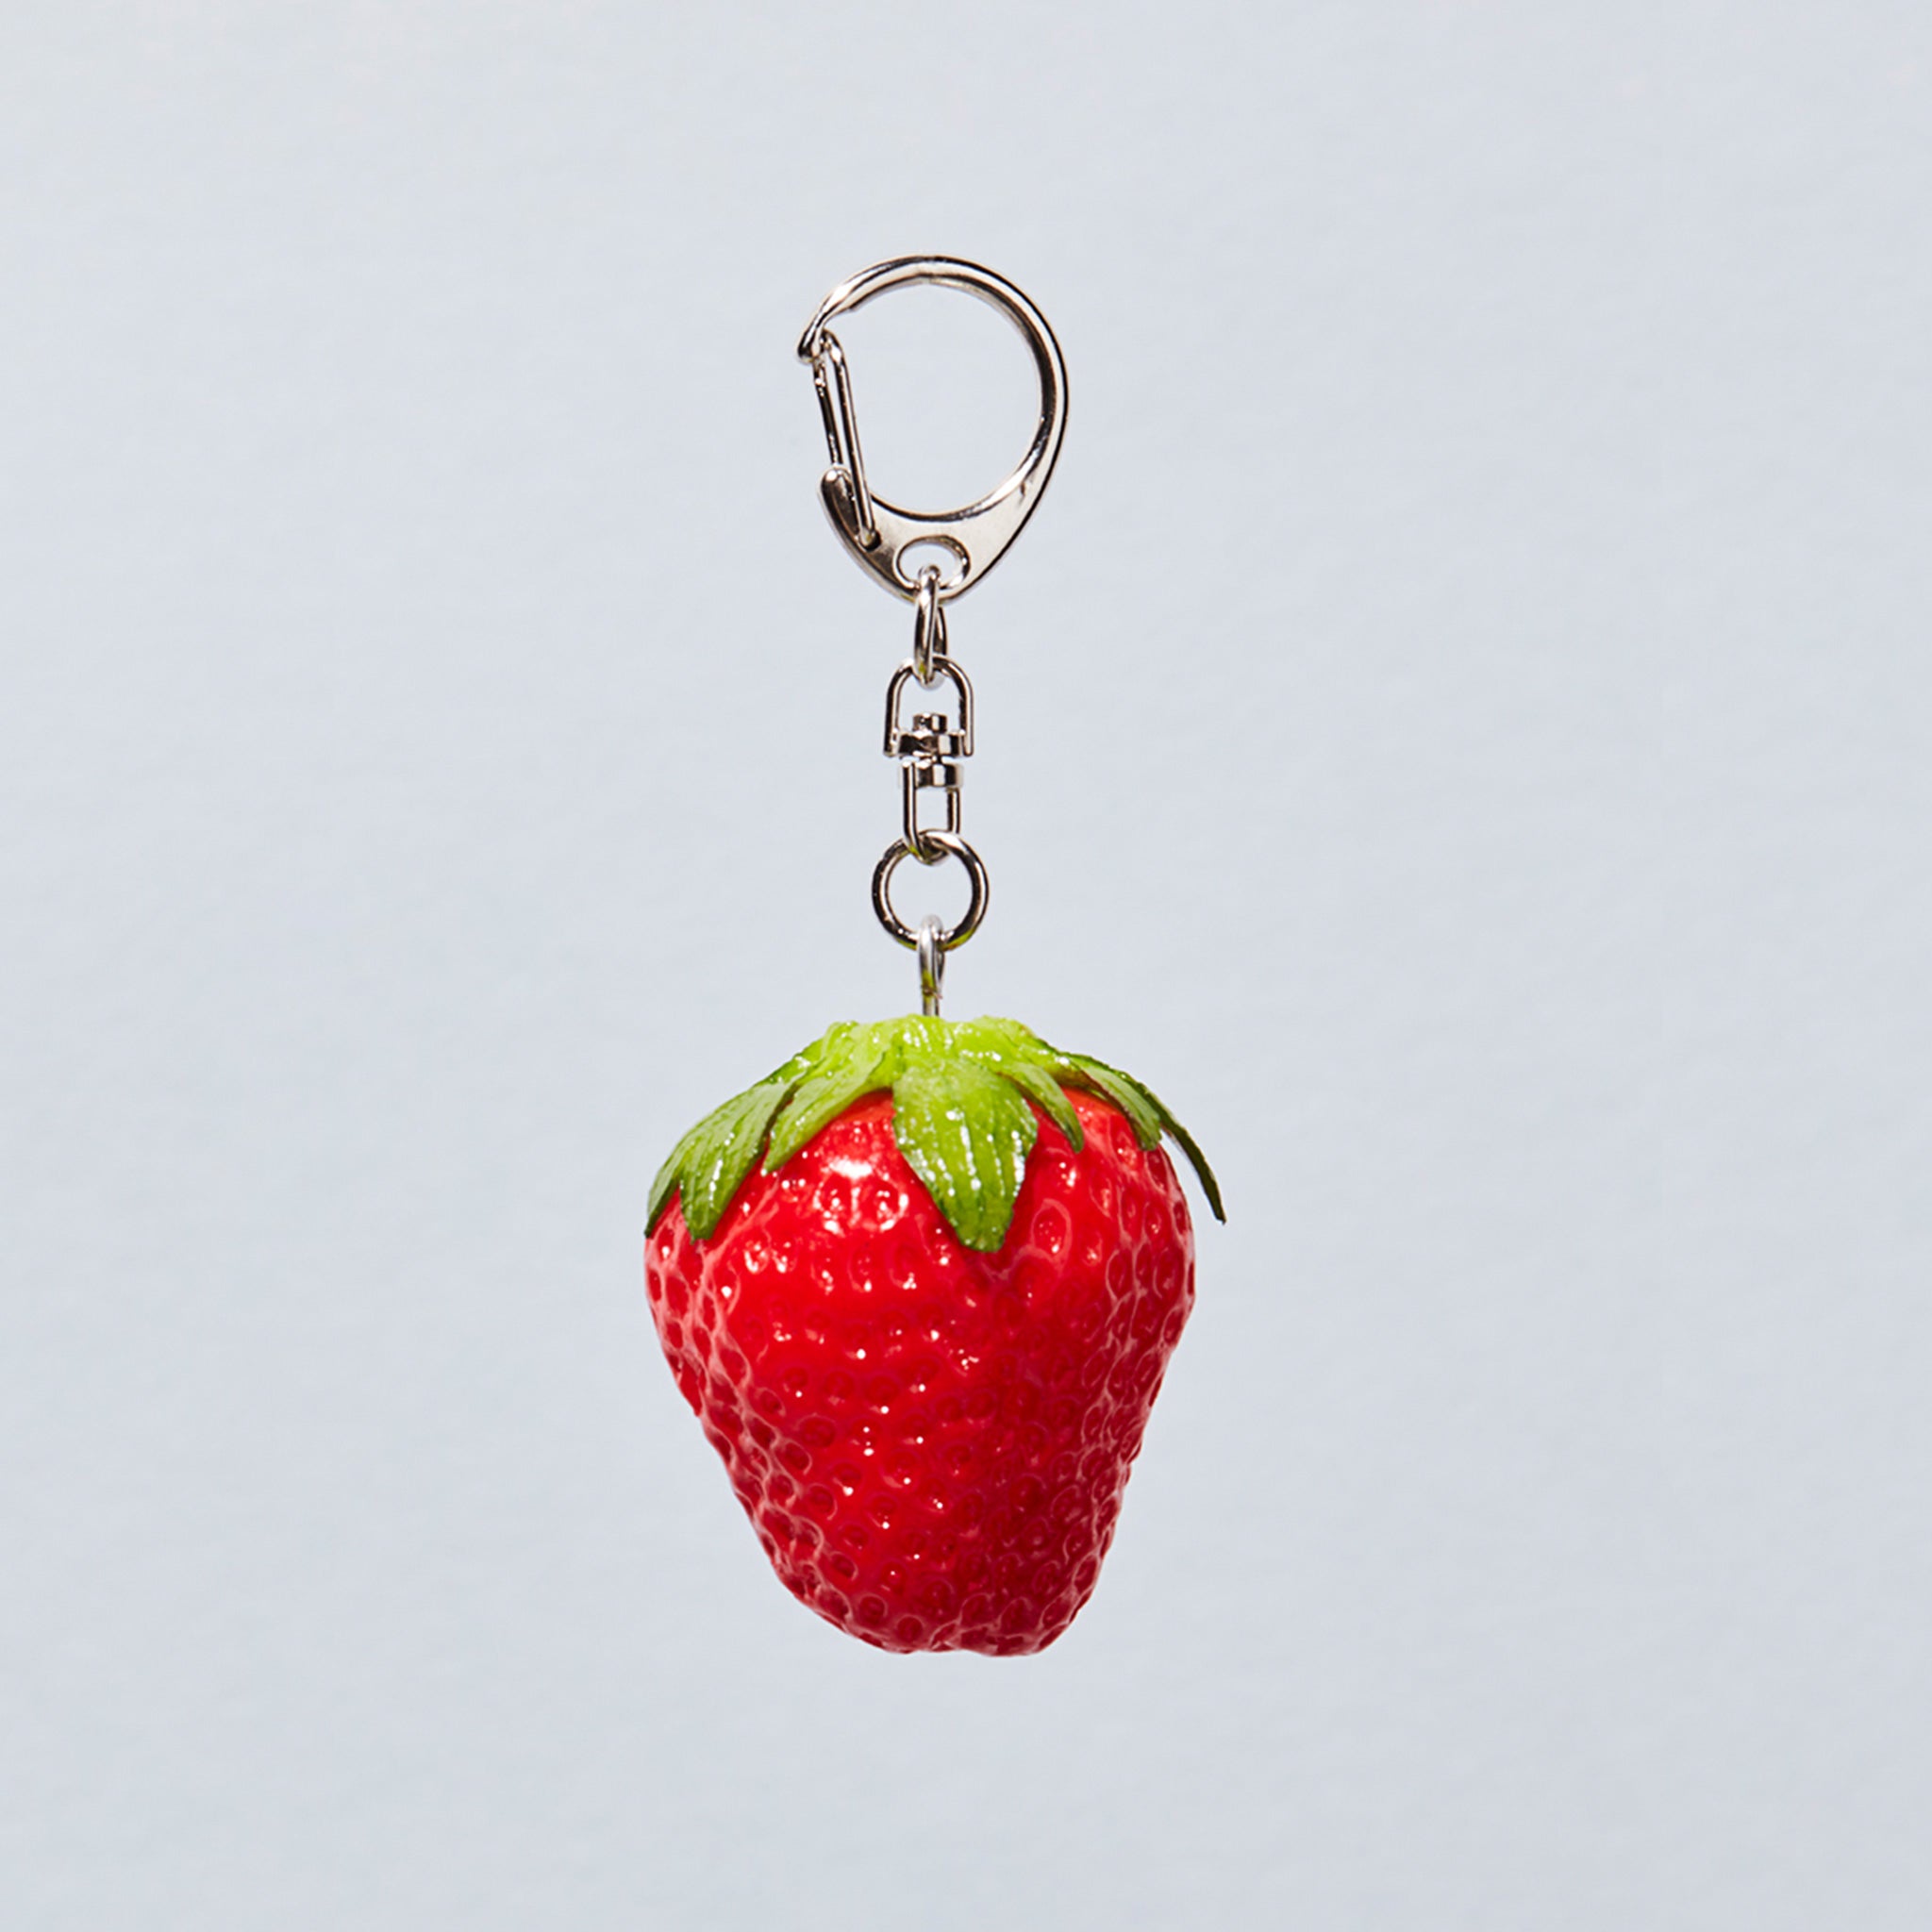 Erdbeeren Schlüsselanhänger Schlüsselring Erdbeere Beere Frucht